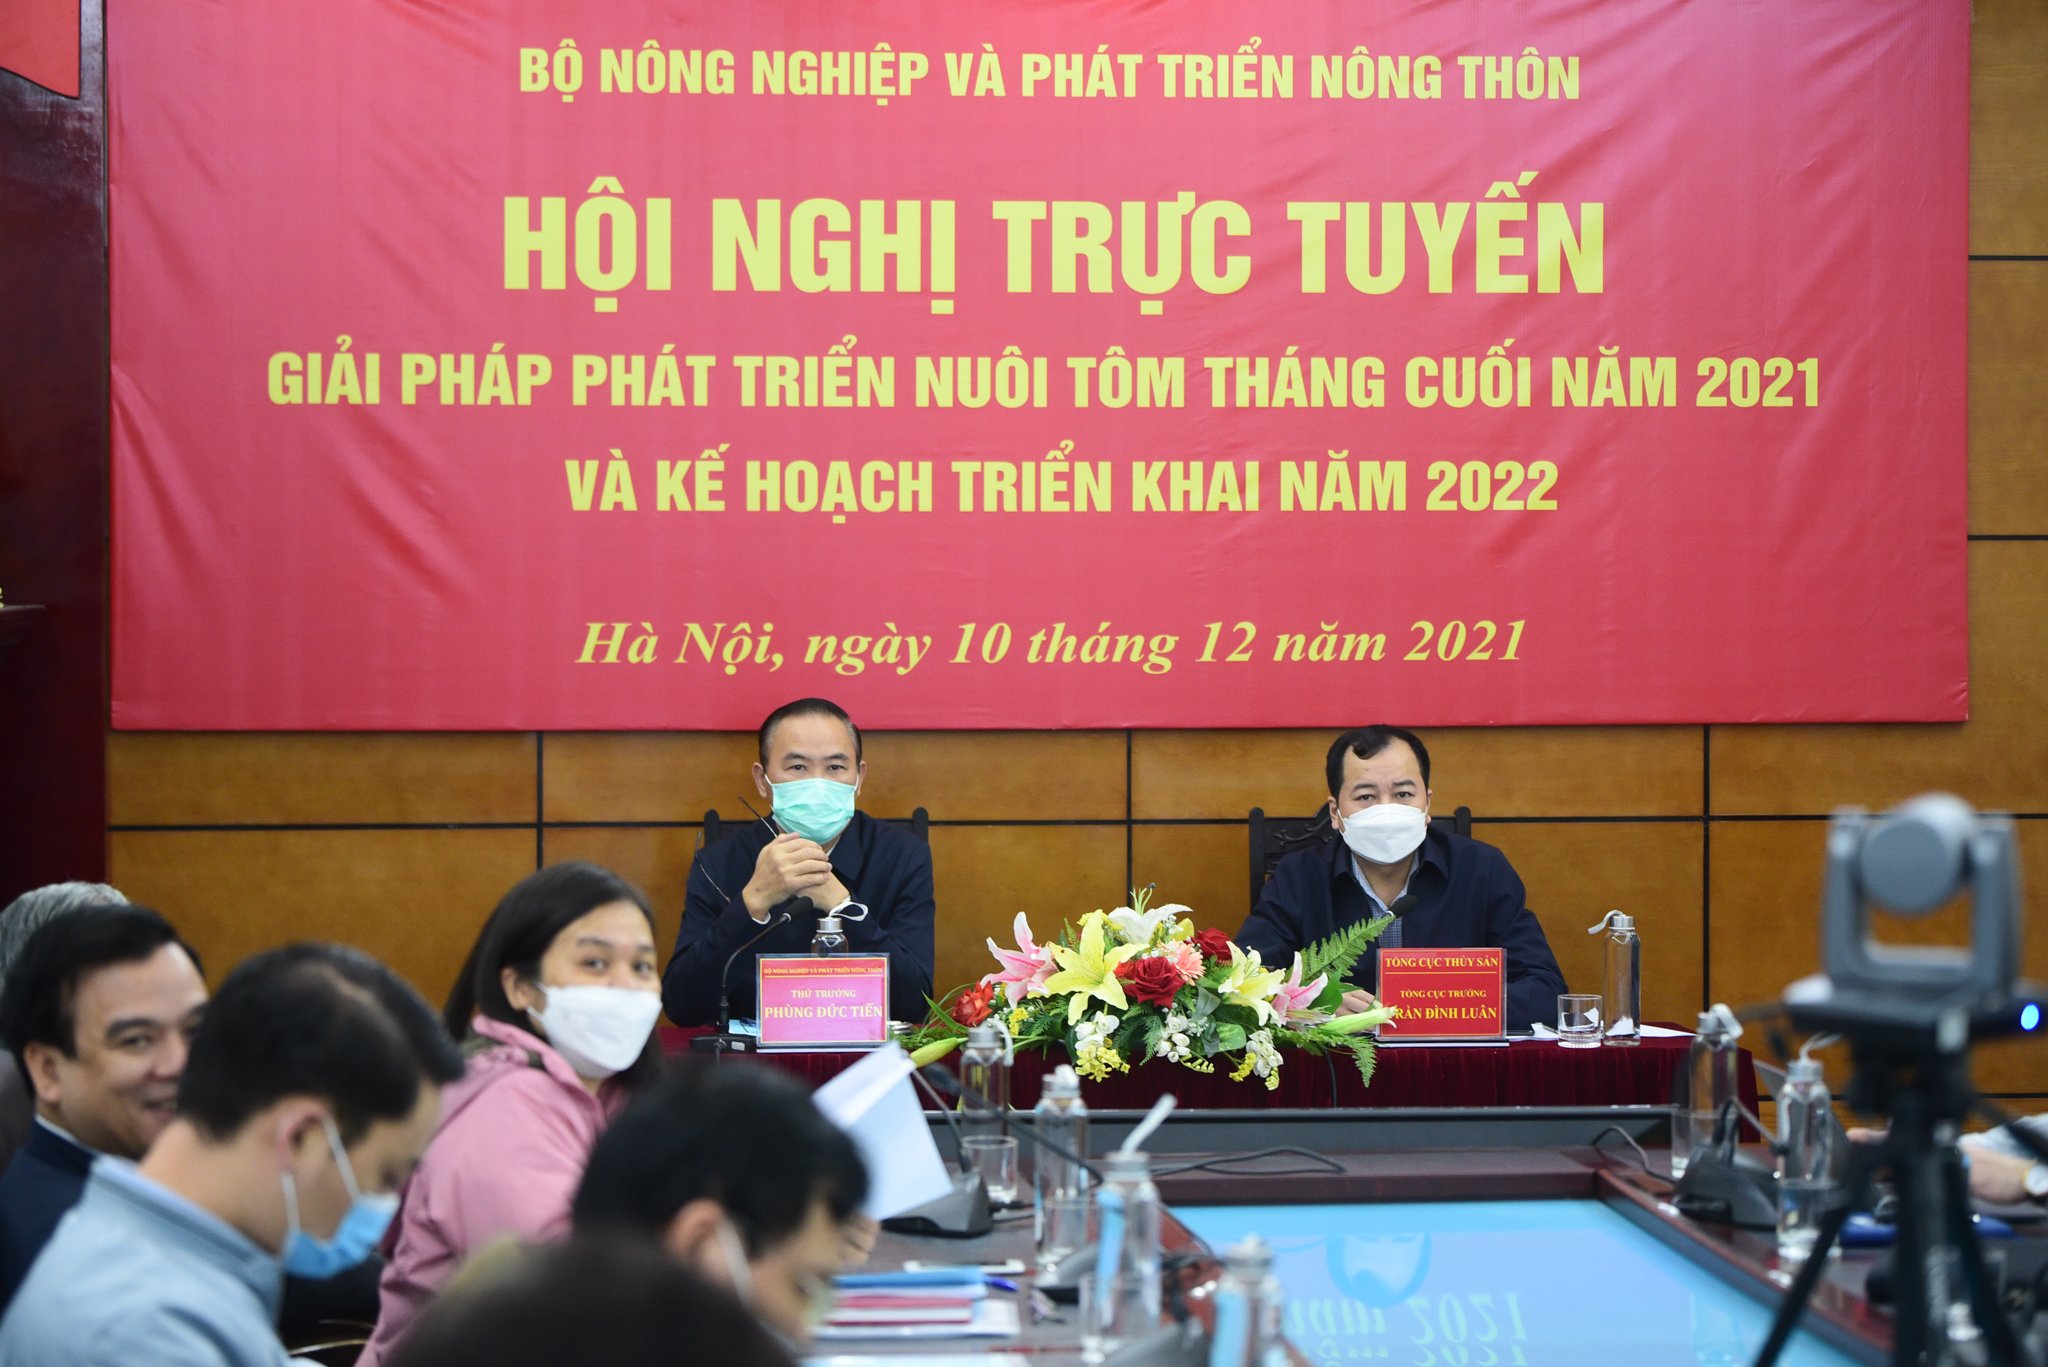 Hội nghị trực tuyến 'Giải pháp phát triển nuôi tôm tháng cuối năm 2021 và năm 2022' do Bộ NN-PTNT tổ chức ngày 10/12. Ảnh: Tùng Đinh.